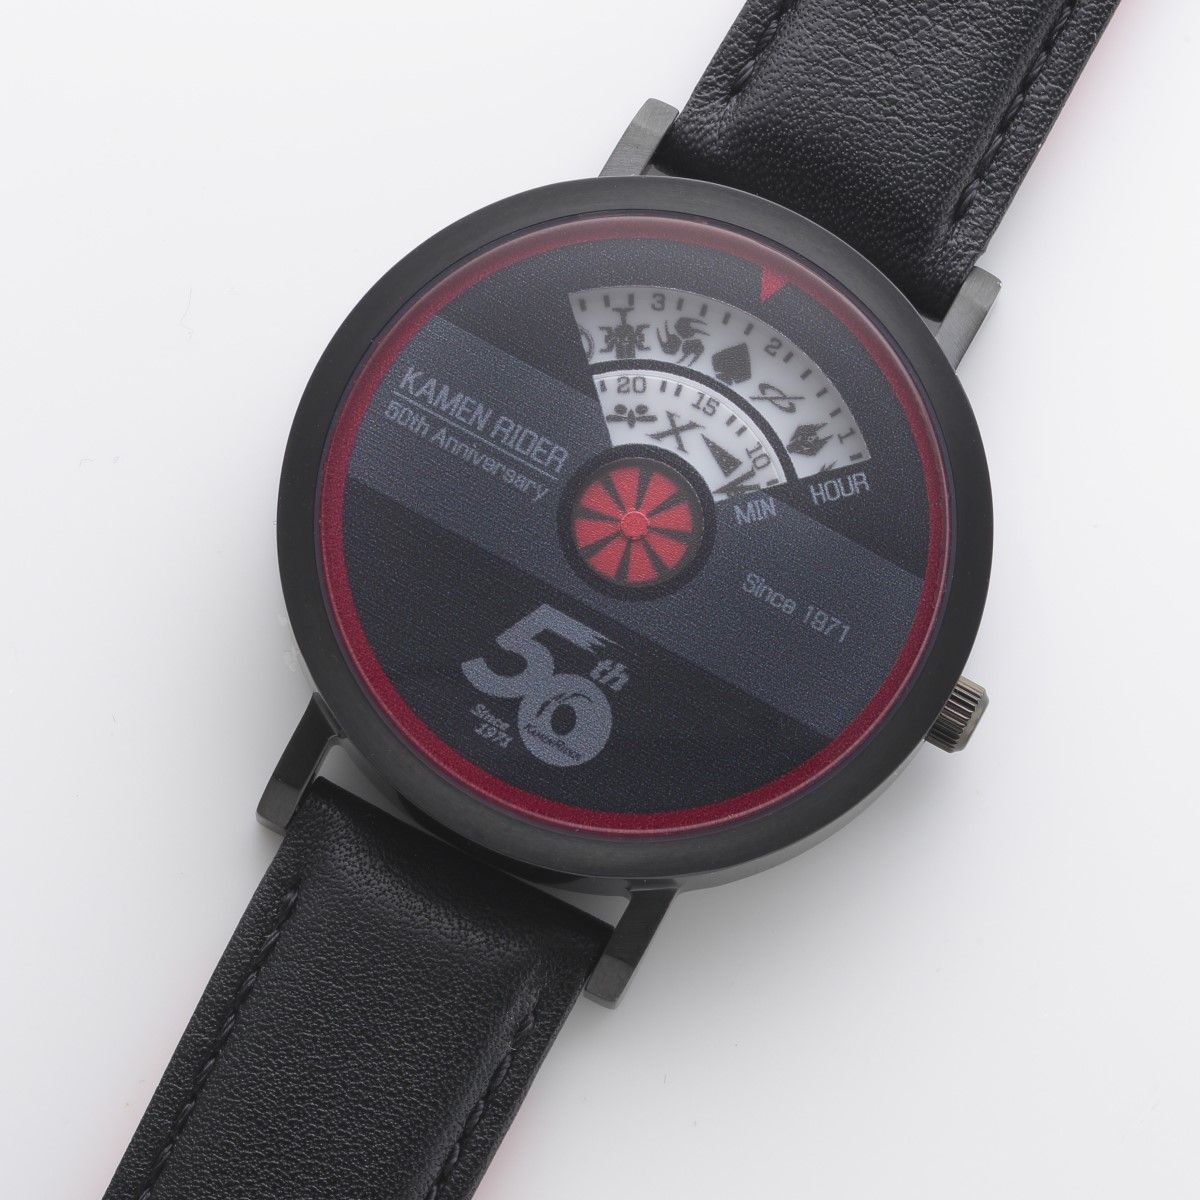 仮面ライダー 50周年記念新品腕時計 限定品最終値下げ-